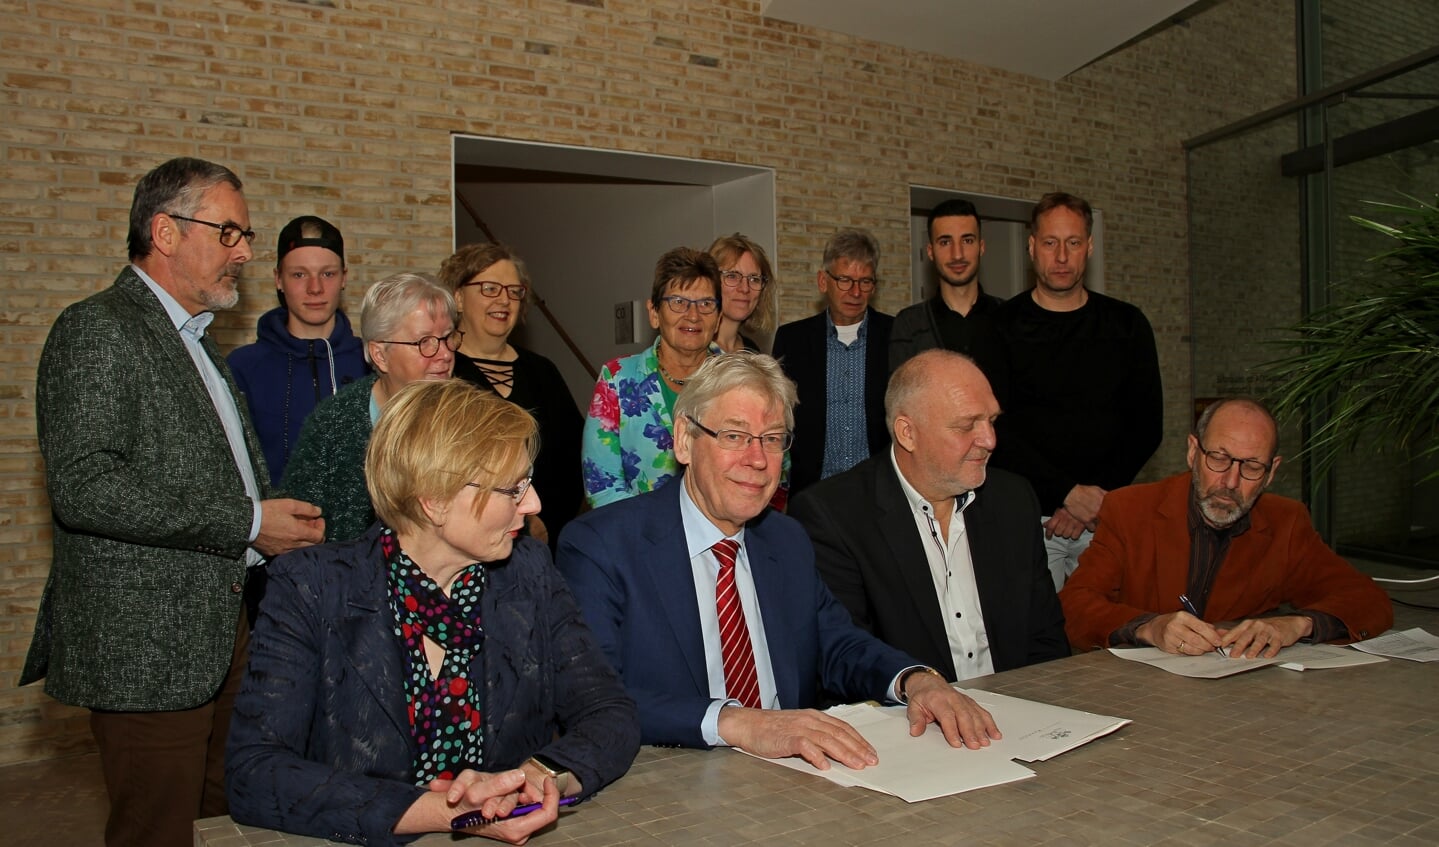 De akte van levering van De Kei in Steenderen wordt ondertekend door secretaris Joop Rutten. Foto: Liesbeth Spaansen